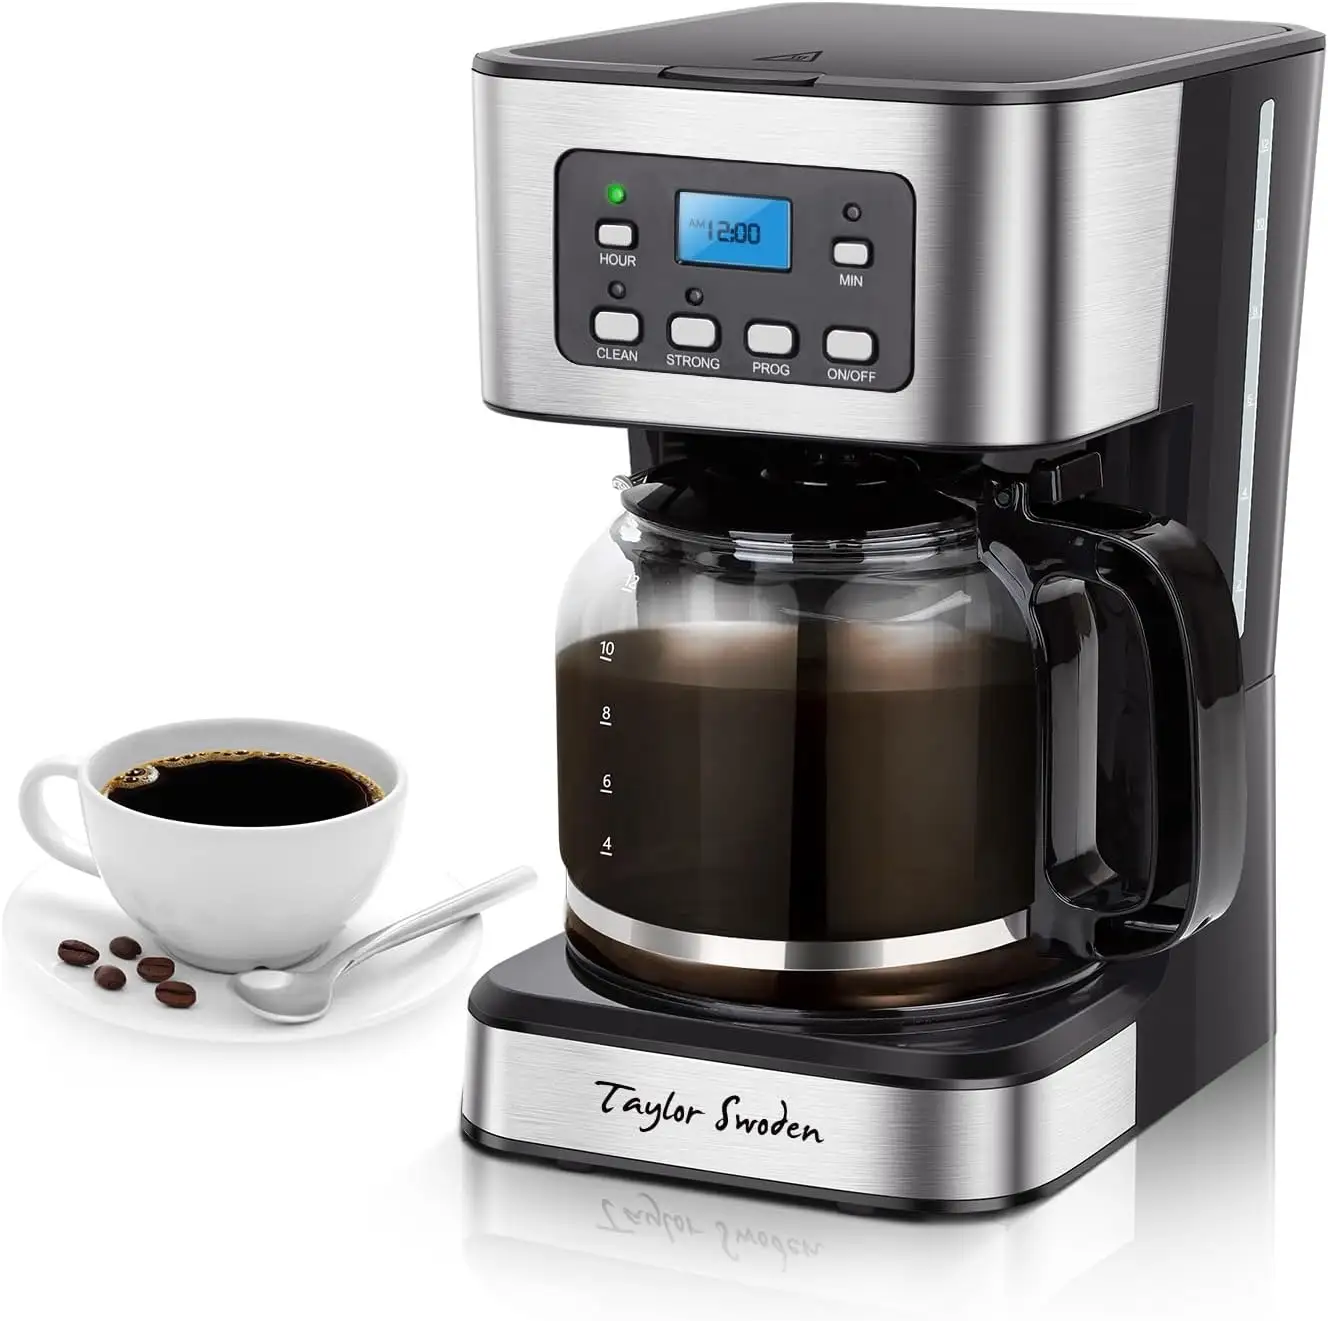 12-Tasse programmierbare Kaffeemaschine, starke Braue-Drop-Cafemaschine für Haus und Büro, Glaskaraffe, Pause und Servieren